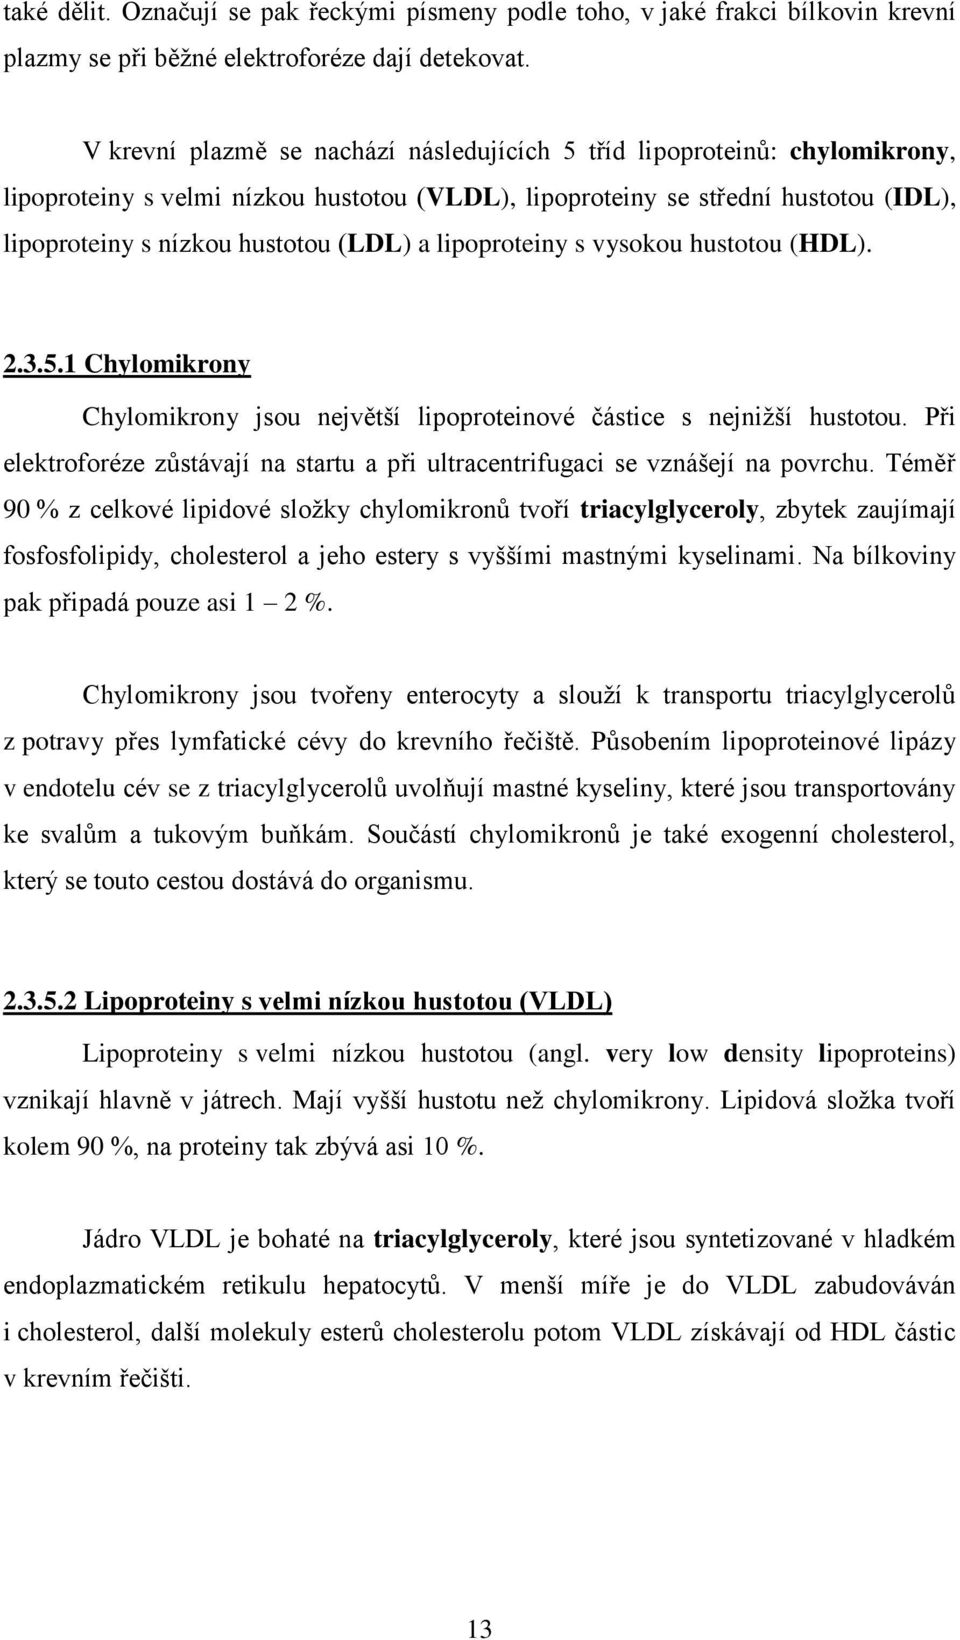 lipoproteiny s vysokou hustotou (HDL). 2.3.5.1 Chylomikrony Chylomikrony jsou největší lipoproteinové částice s nejniţší hustotou.